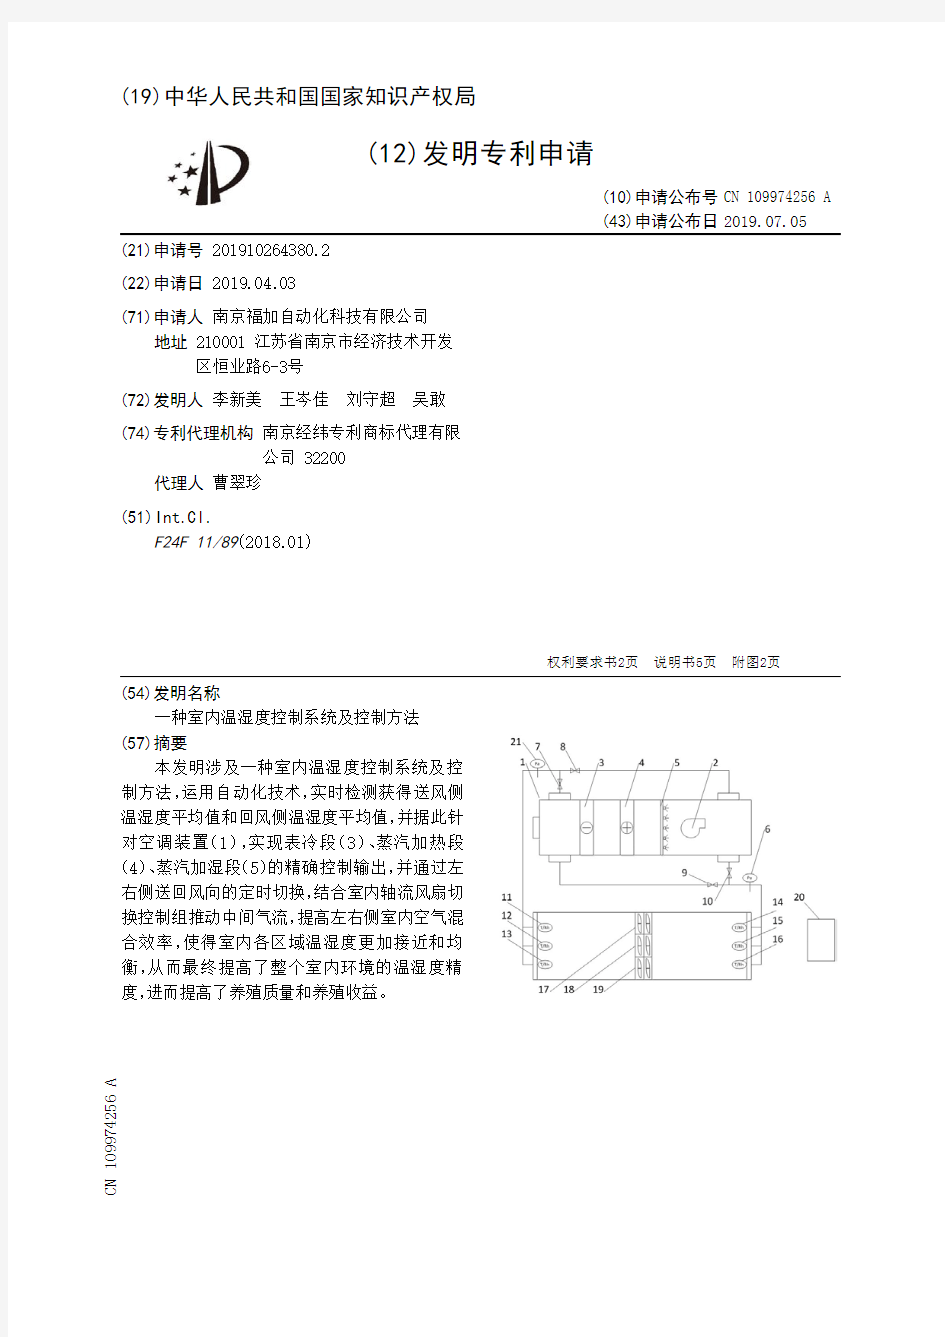 【CN109974256A】一种室内温湿度控制系统及控制方法【专利】